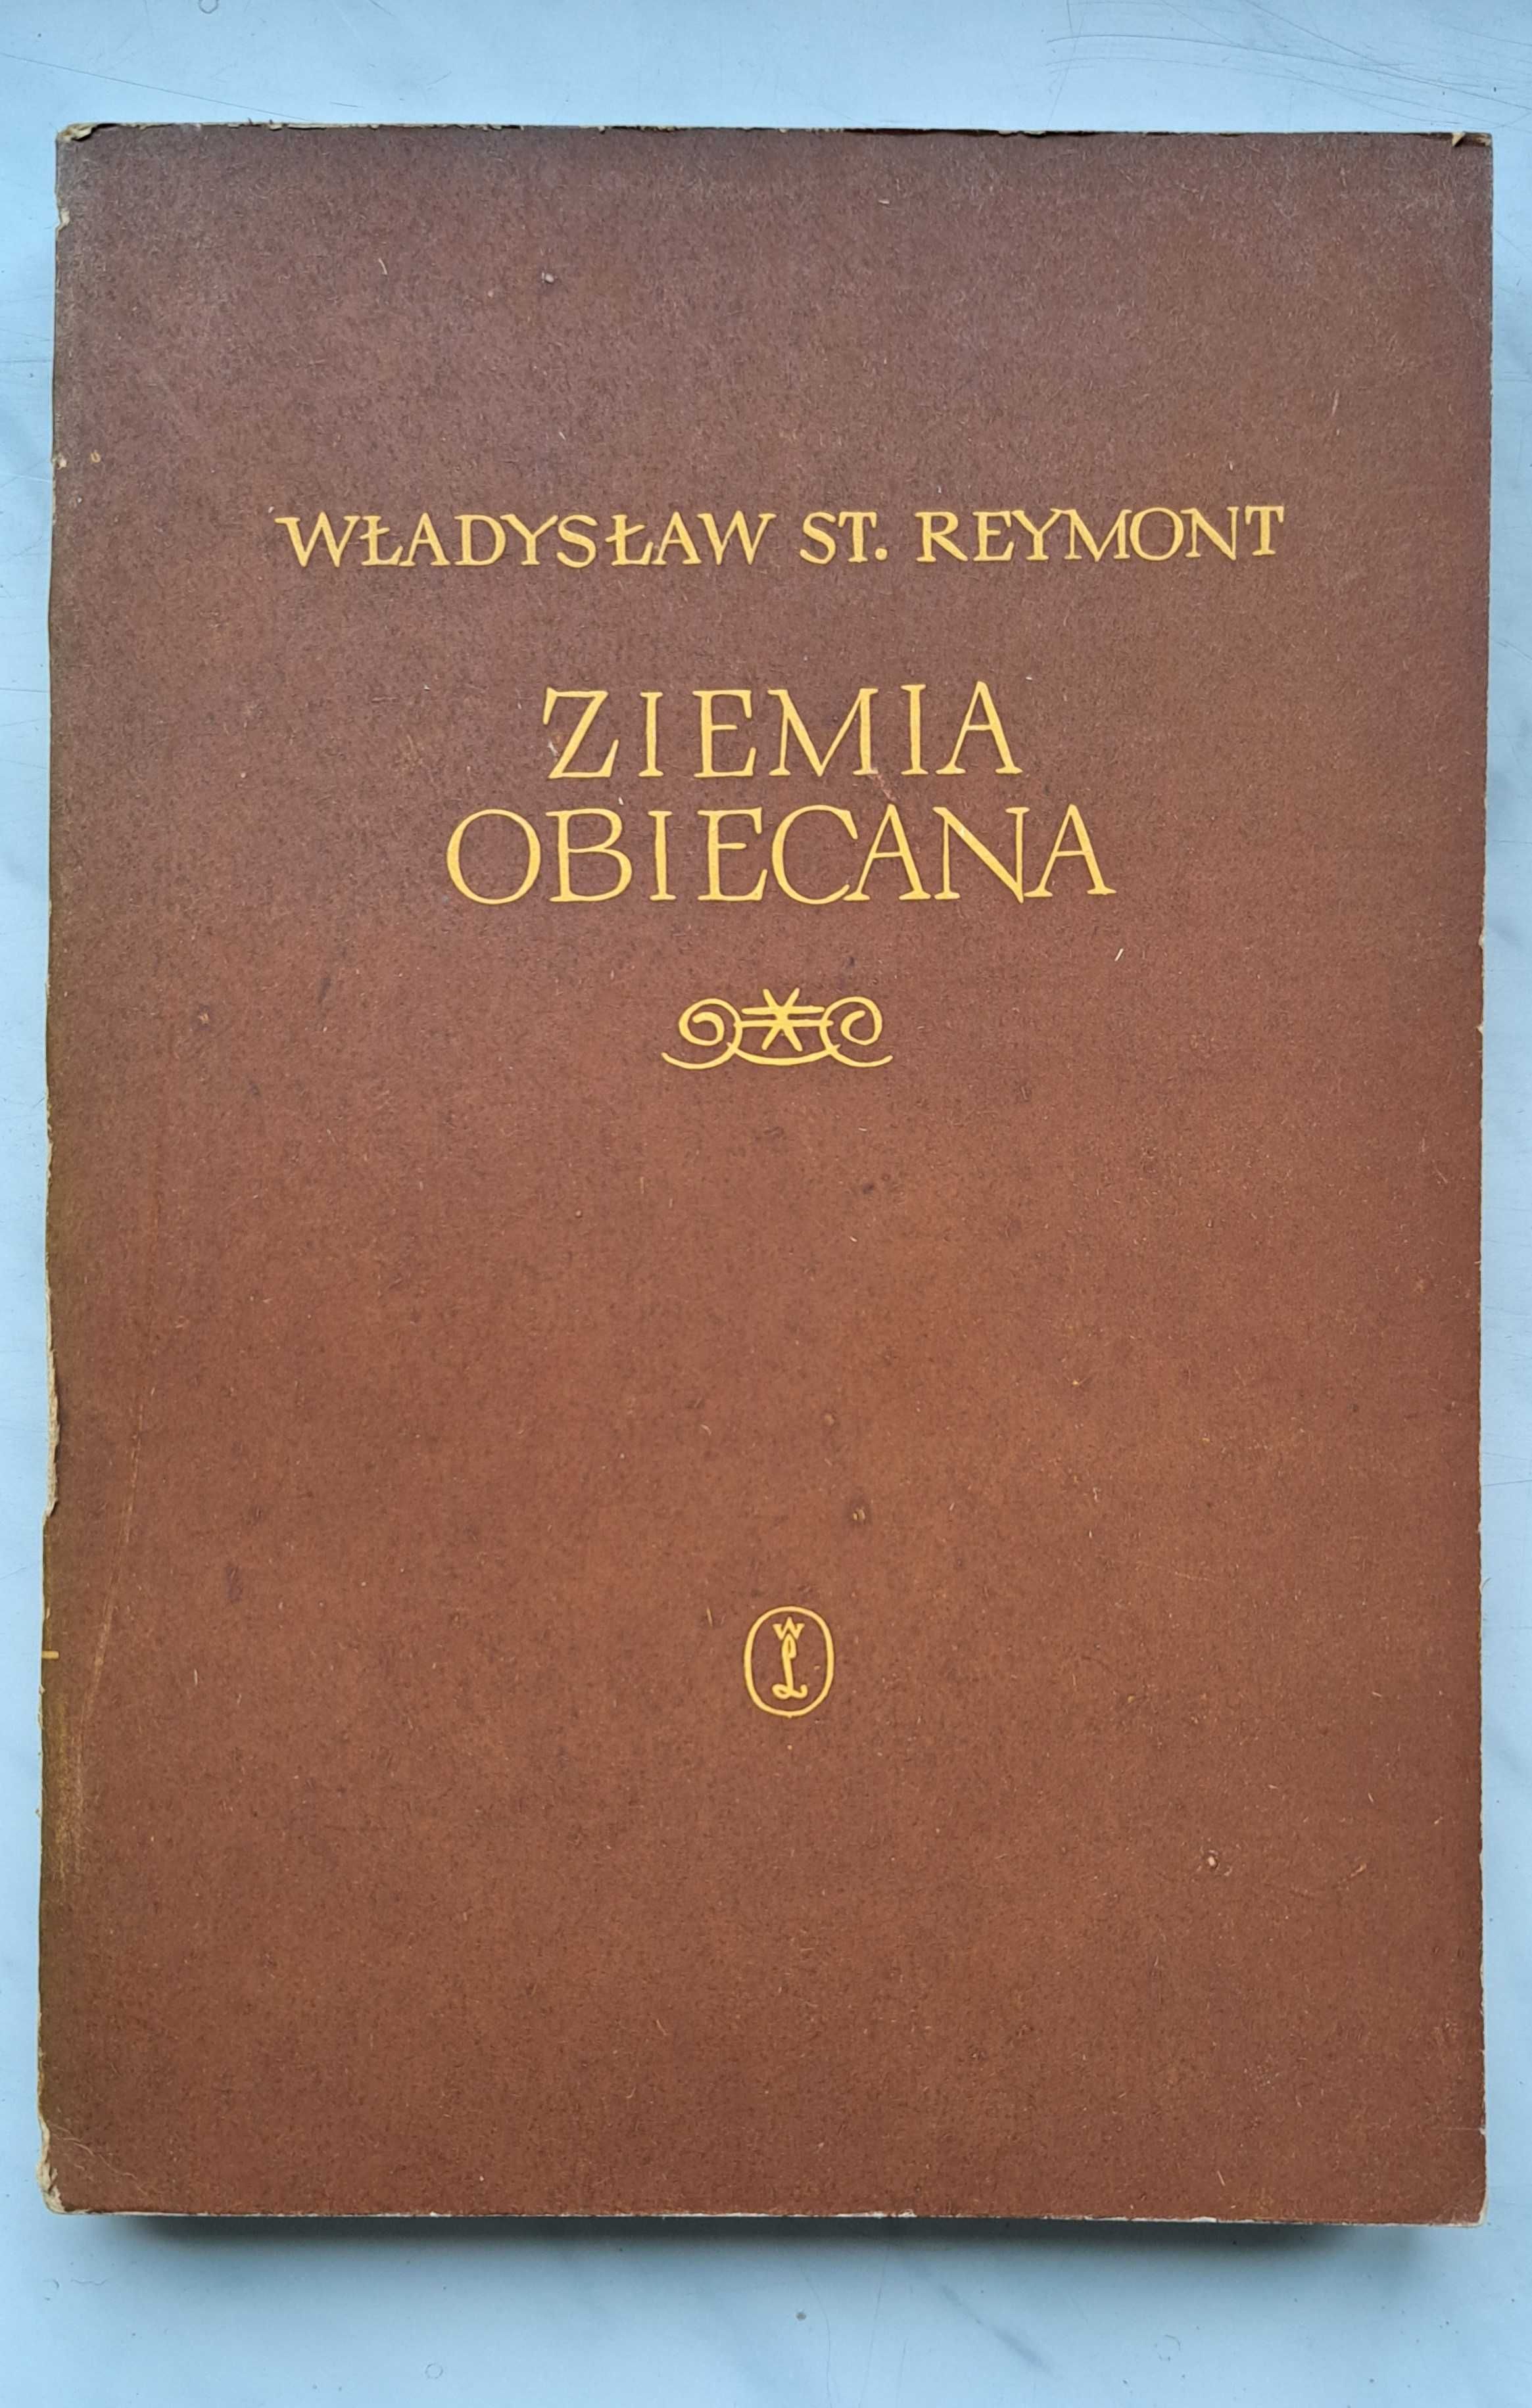 Ziemia obiecana - Władysław Reymont - 2 tomy